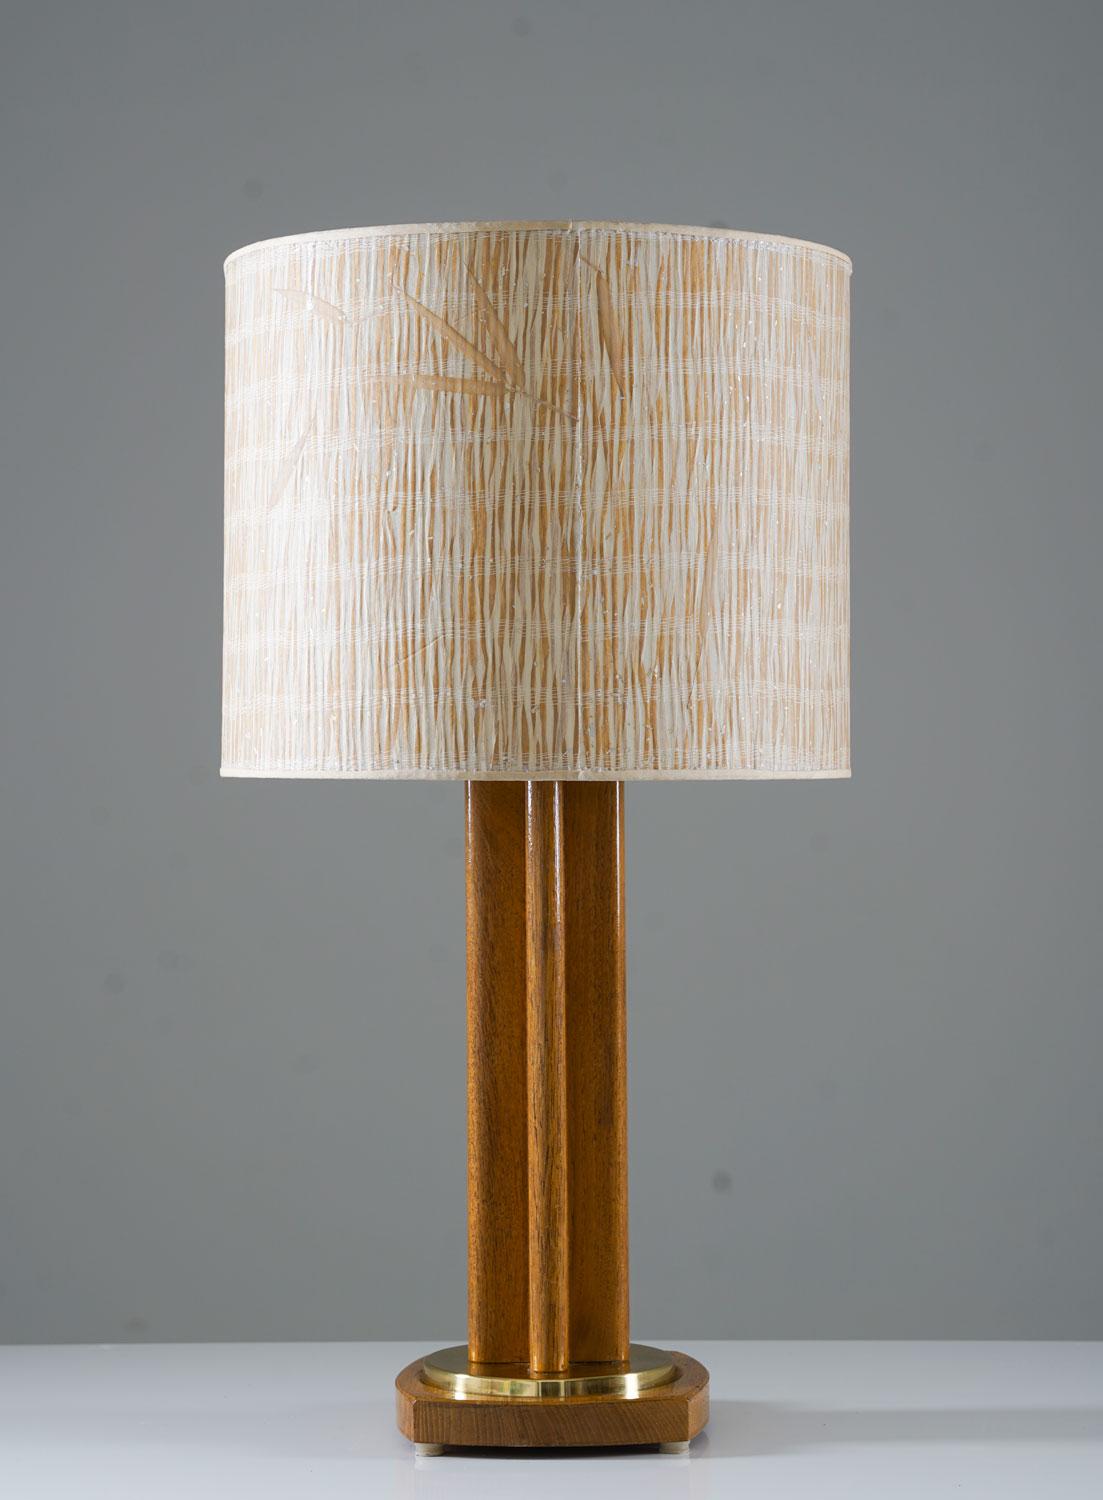 Grande lampe de table scandinave du milieu du siècle en chêne et laiton par Möllers Armatur Elektriska, Suède, années 1950. 
Cette lampe est fabriquée en chêne avec des détails en laiton. La lampe est accompagnée d'un superbe abat-jour vintage en